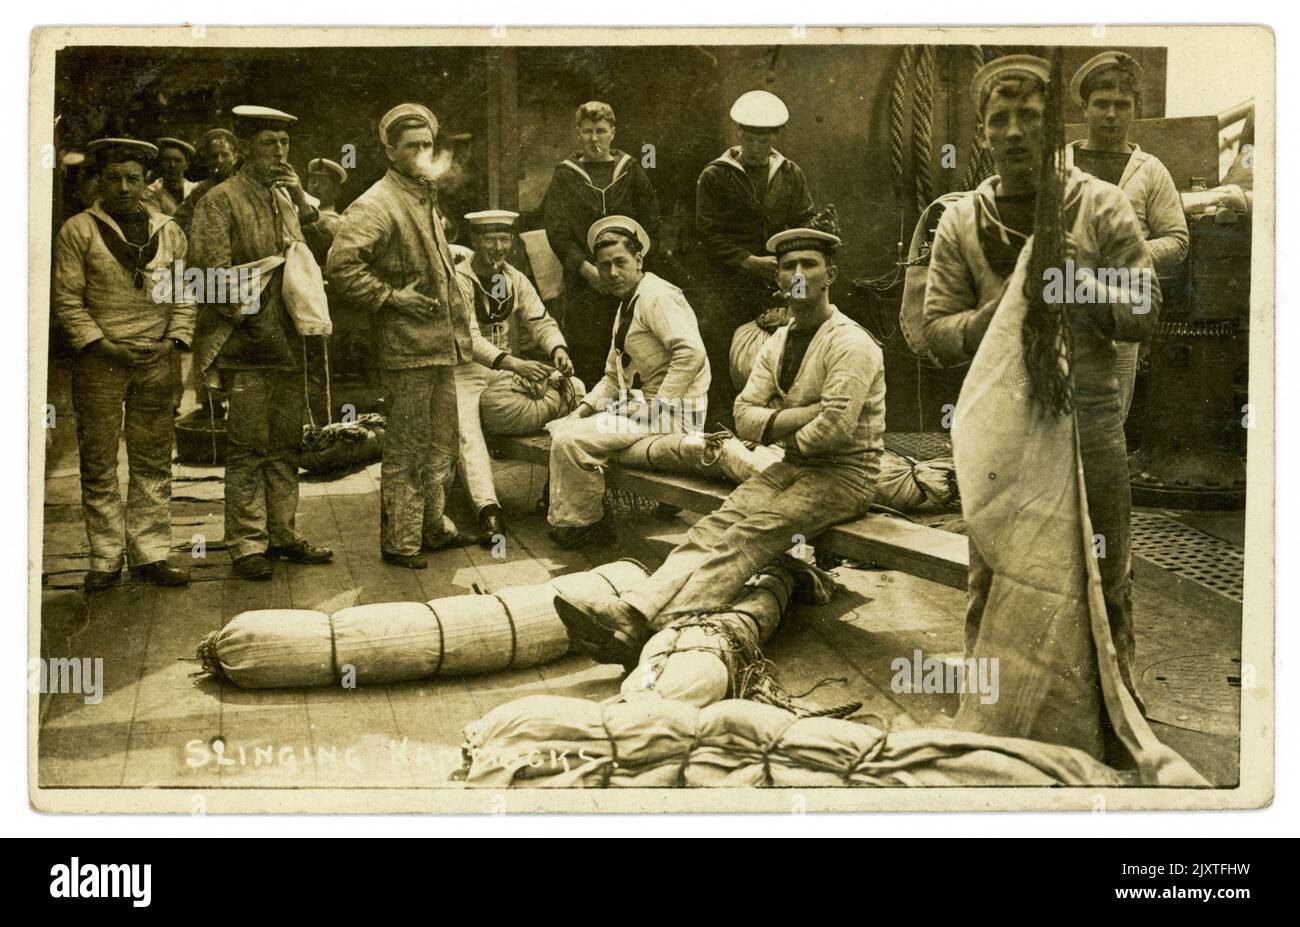 Cartolina originale dell'era WW1 del gruppo dei marinai reali della marina che imbragano le amache su una nave, lotti dei caratteri, un uomo sta fumando, datato e inviato da Portsmouth il 5th 1916 ottobre, appena prima della fine della guerra, il Regno Unito Foto Stock